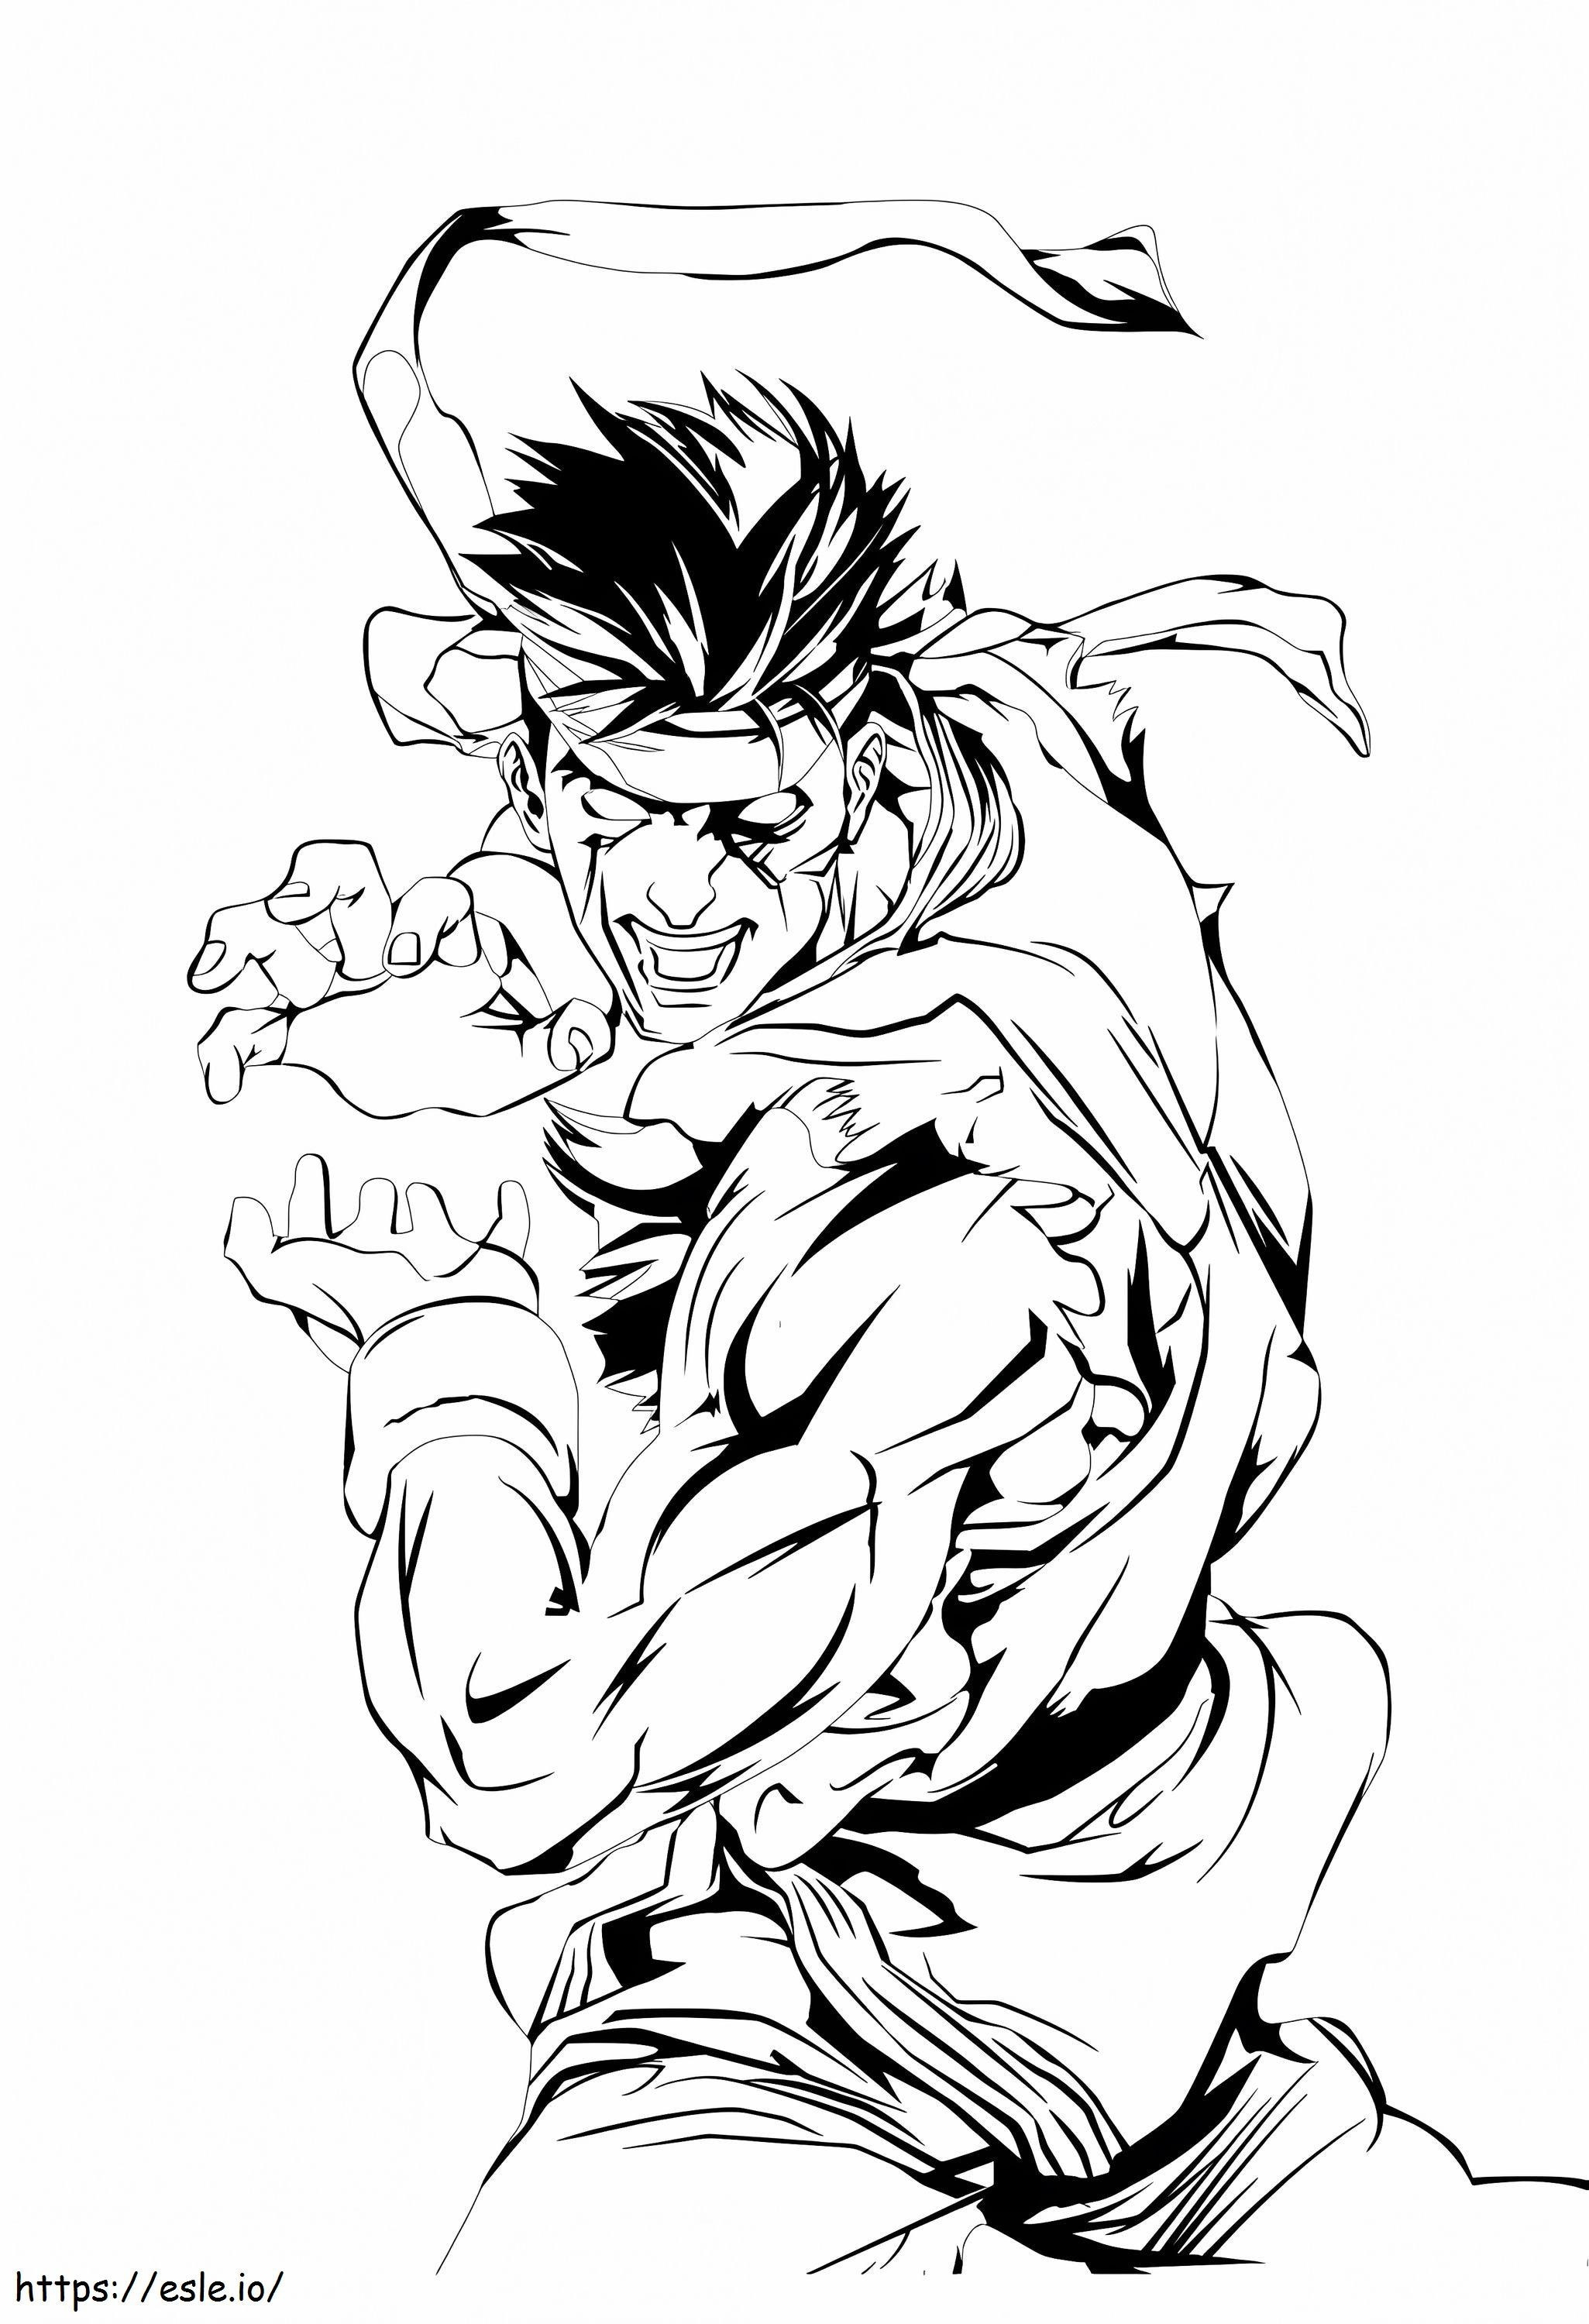 Böser Ryu ausmalbilder